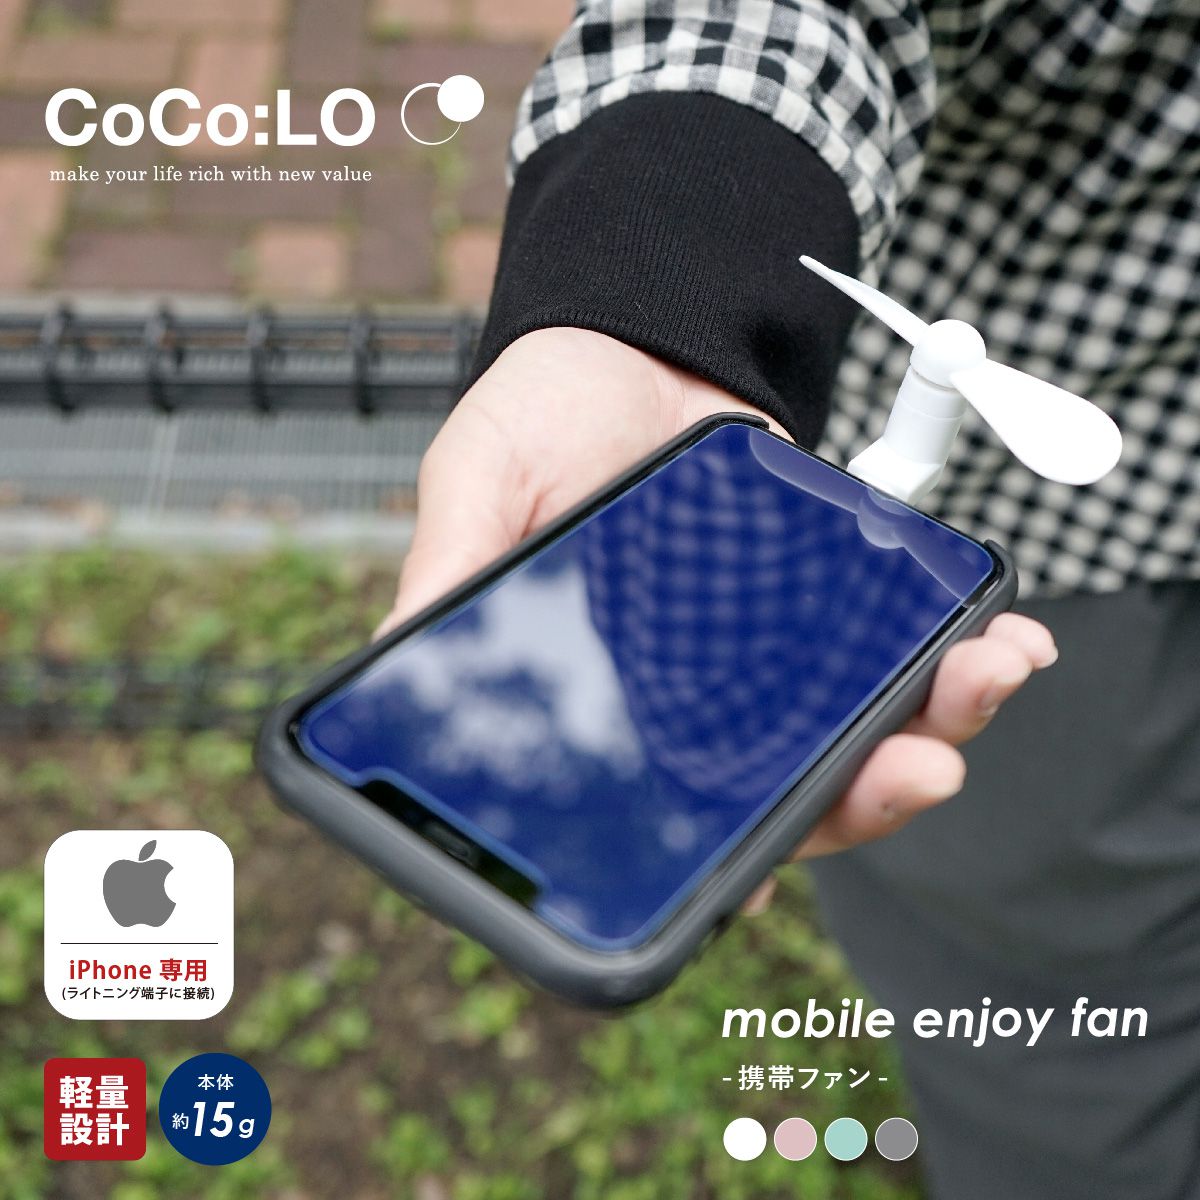 プロペラ スマホ ミニ 扇風機 CoCo:LO ココロ モバイル エンジョイ ファン iPhone対応 ライトニング端子 ホワイト ピンク ブルー ブラック adepeche アデペシュ